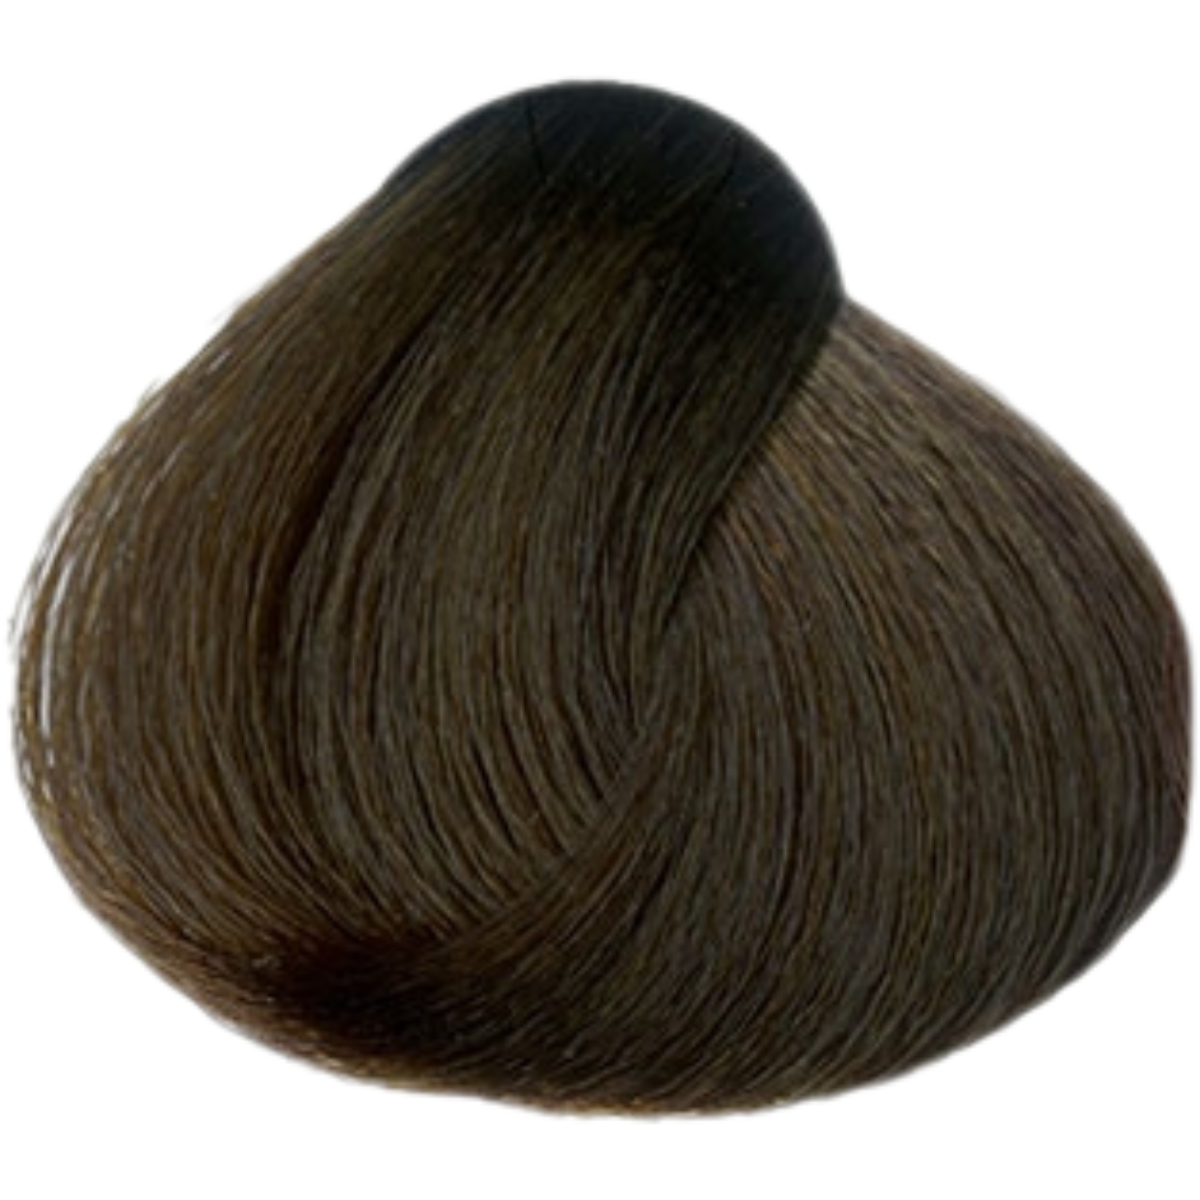 צבע שיער 5.52 LIGHT CHOCOLATE MAHOGANY BROWN פארמויטה FarmaVita צבע לשיער 60 גרם